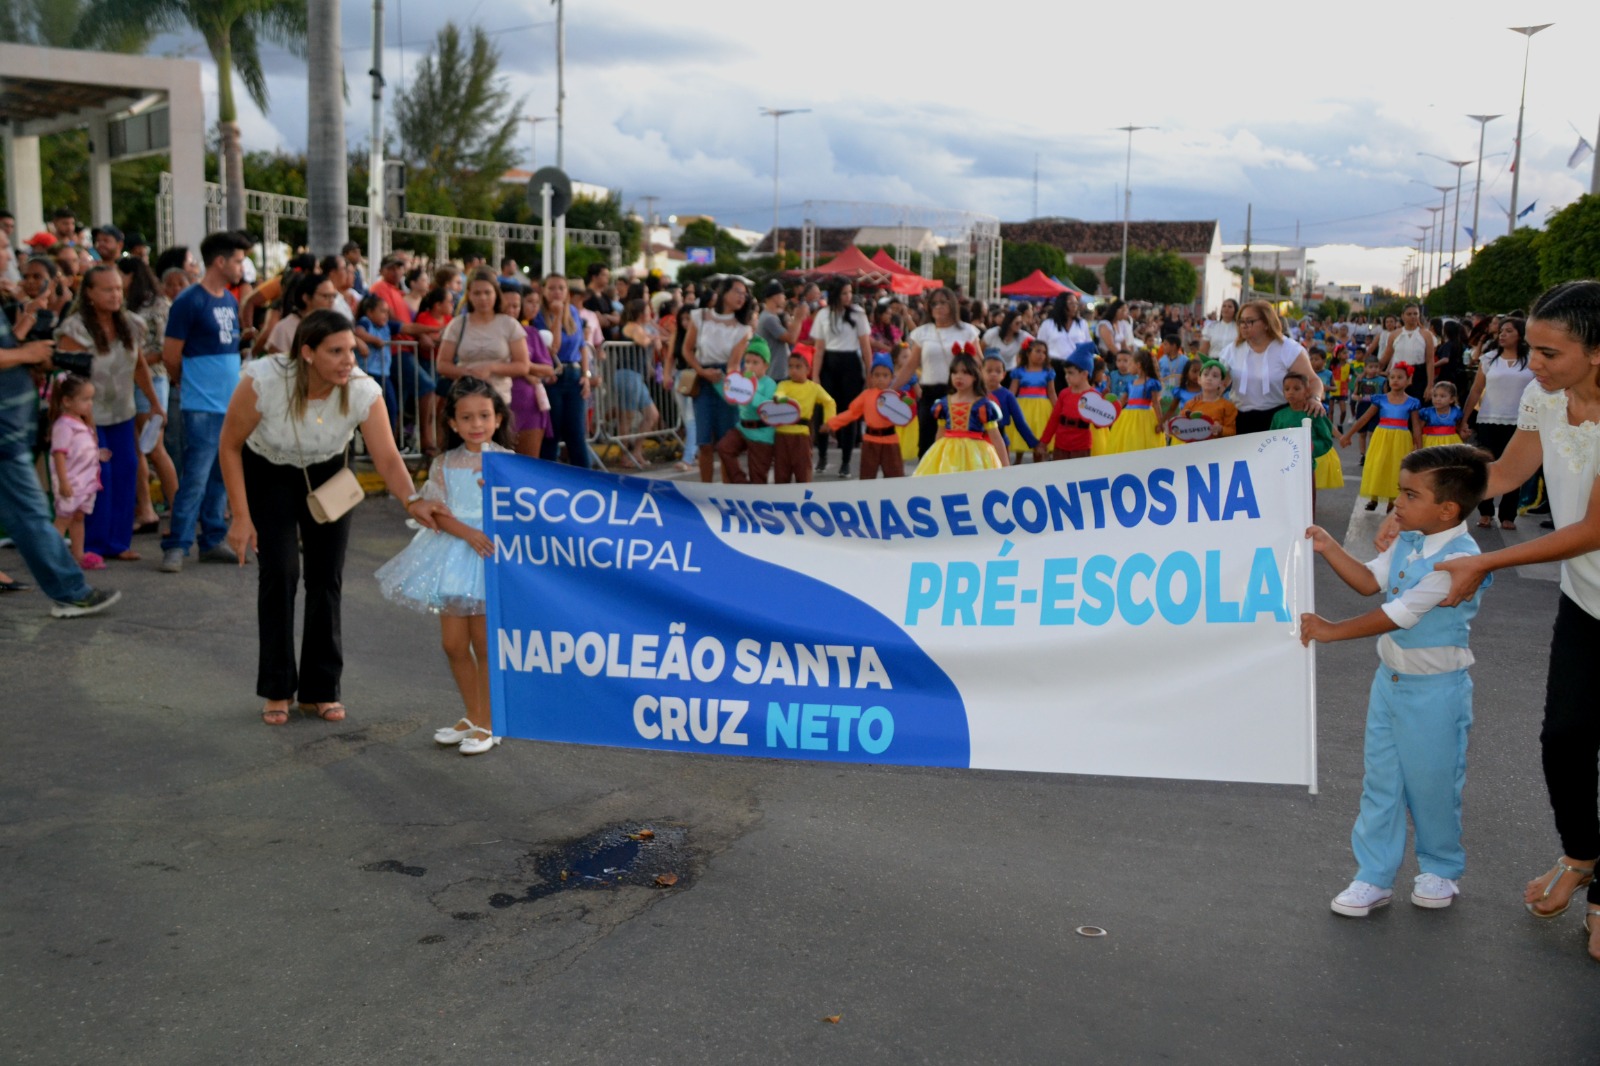 Desfiles-Civicos-em-Monteiro-acontecem-com-grande-presenca-de-publico-e-autoridades-3 Desfiles Cívicos em Monteiro acontecem com grande presença de público e autoridades